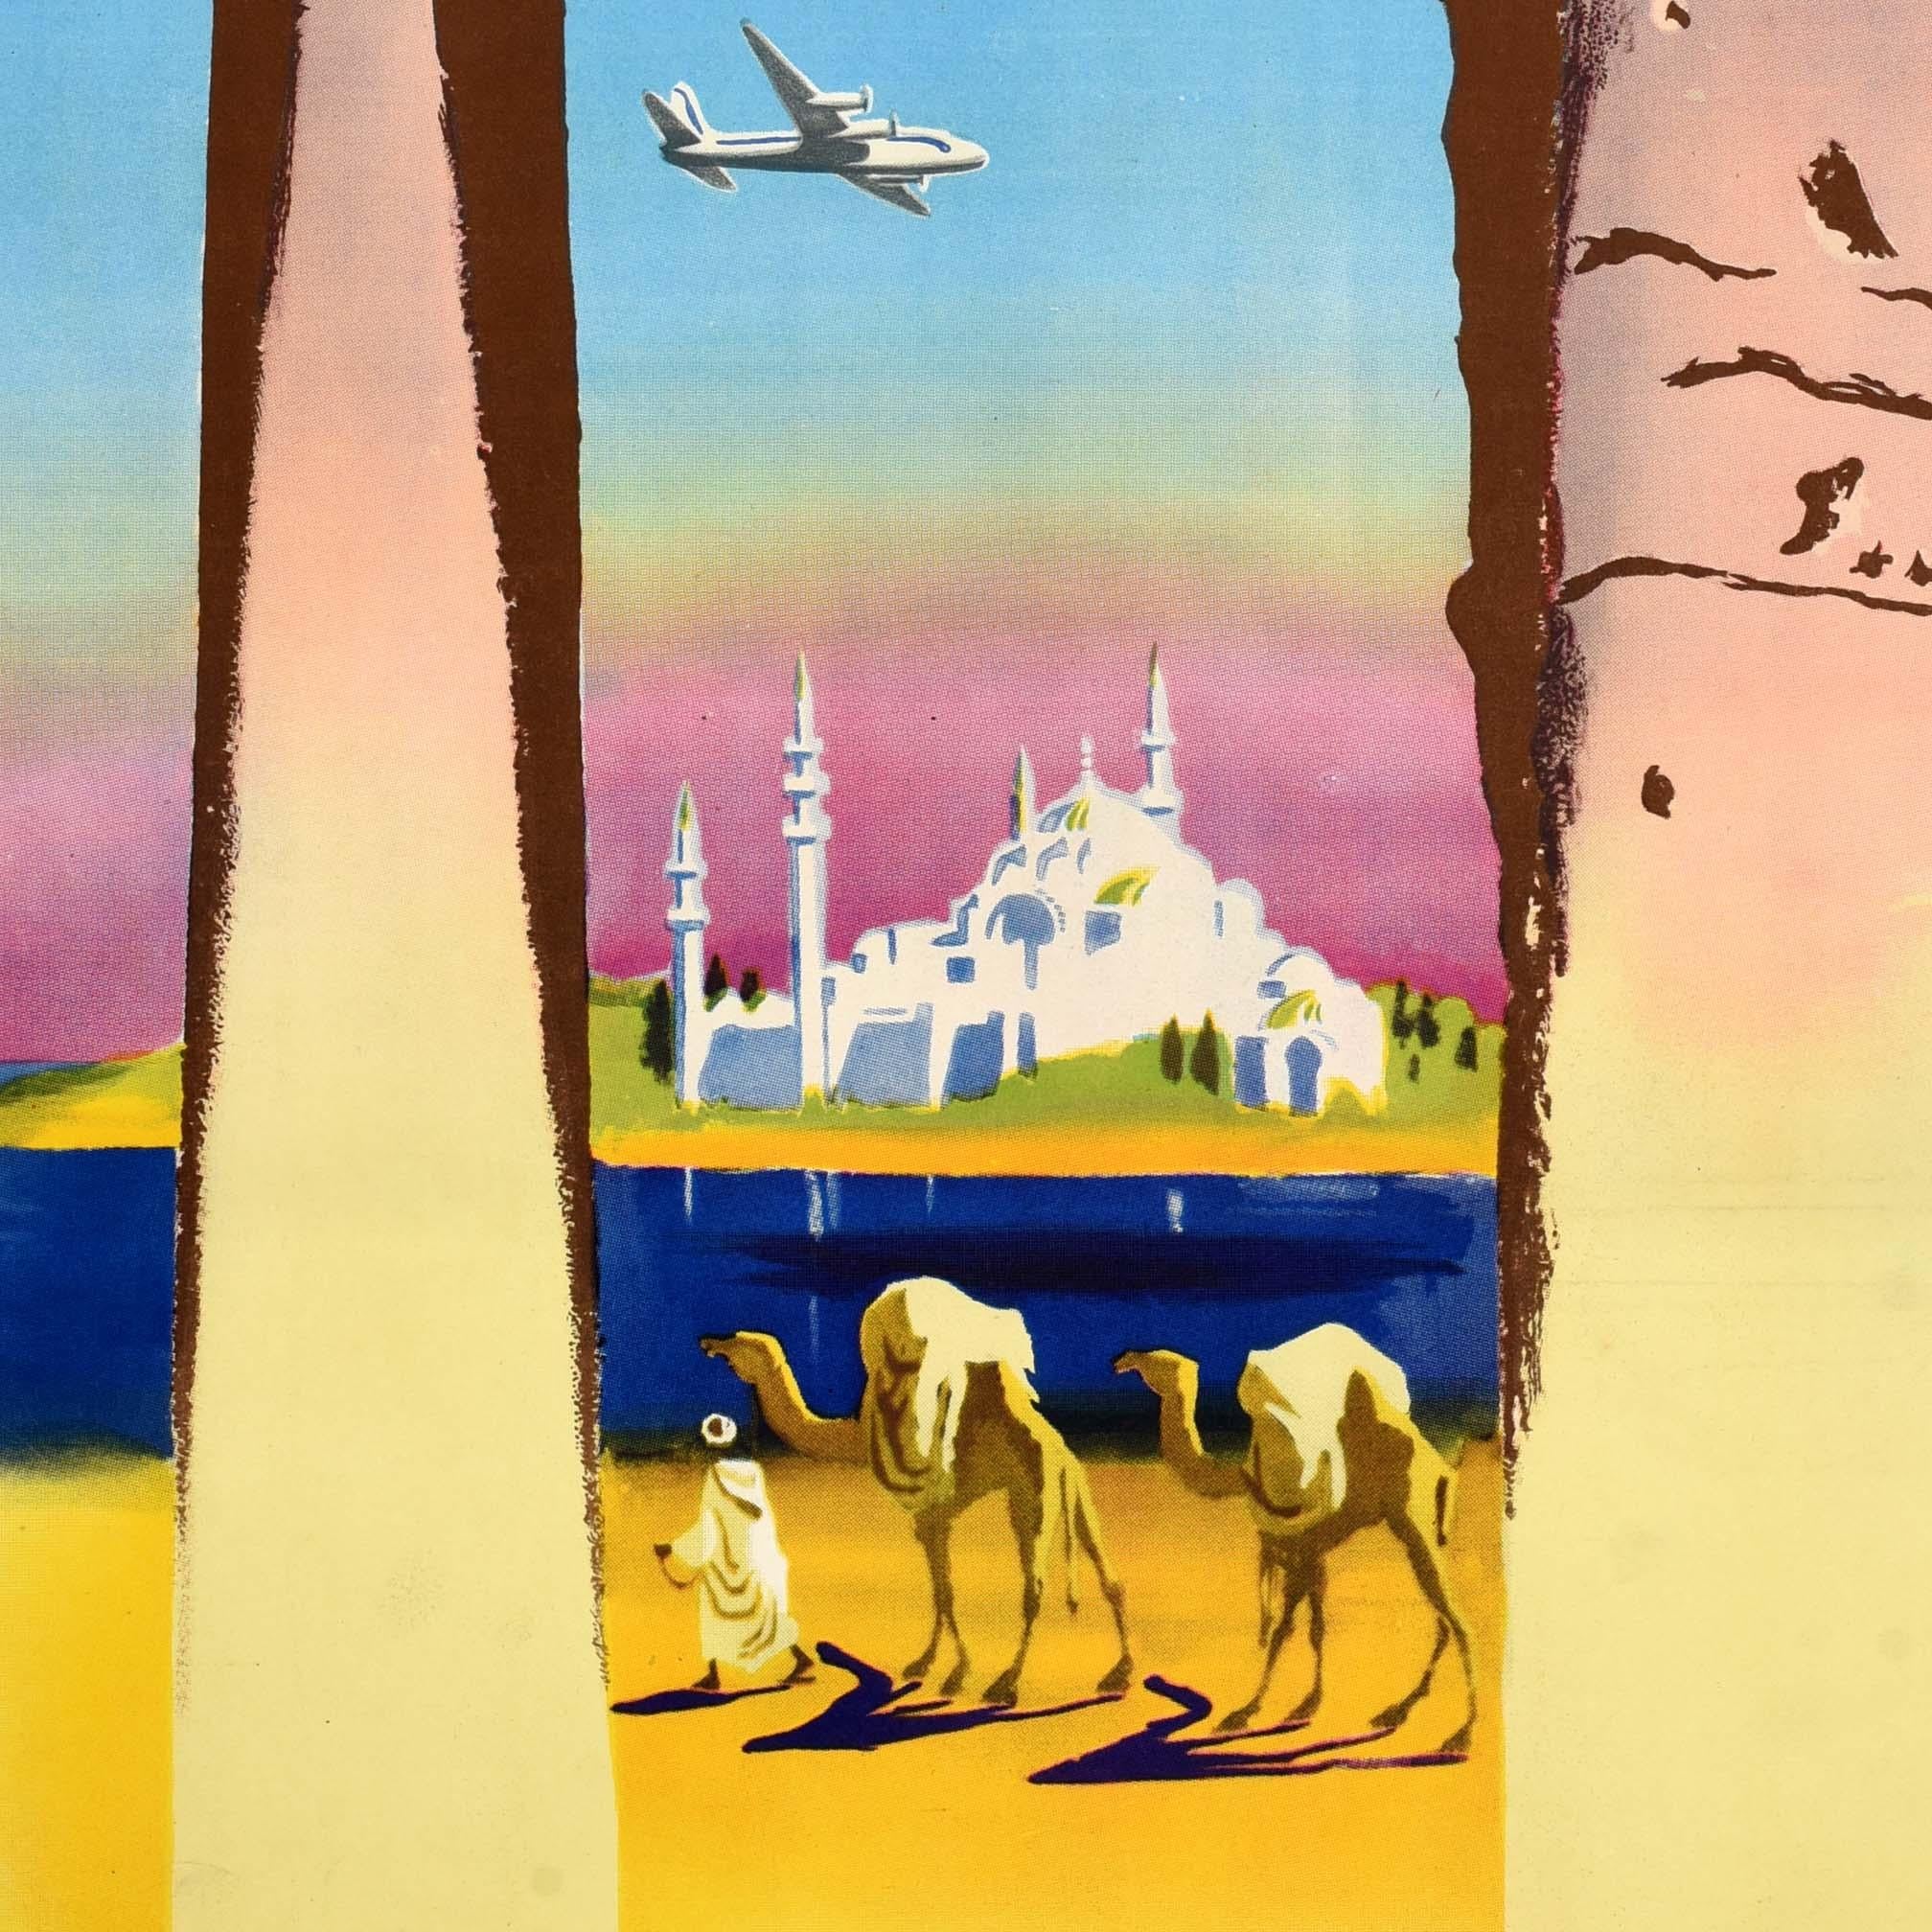 Affiche de voyage originale pour le Moyen-Orient / Proche Orient émise par Air France, comportant une illustration colorée de l'artiste français Jean Even (1910-1986) représentant une personne vêtue de blanc conduisant des chameaux sur le sable du